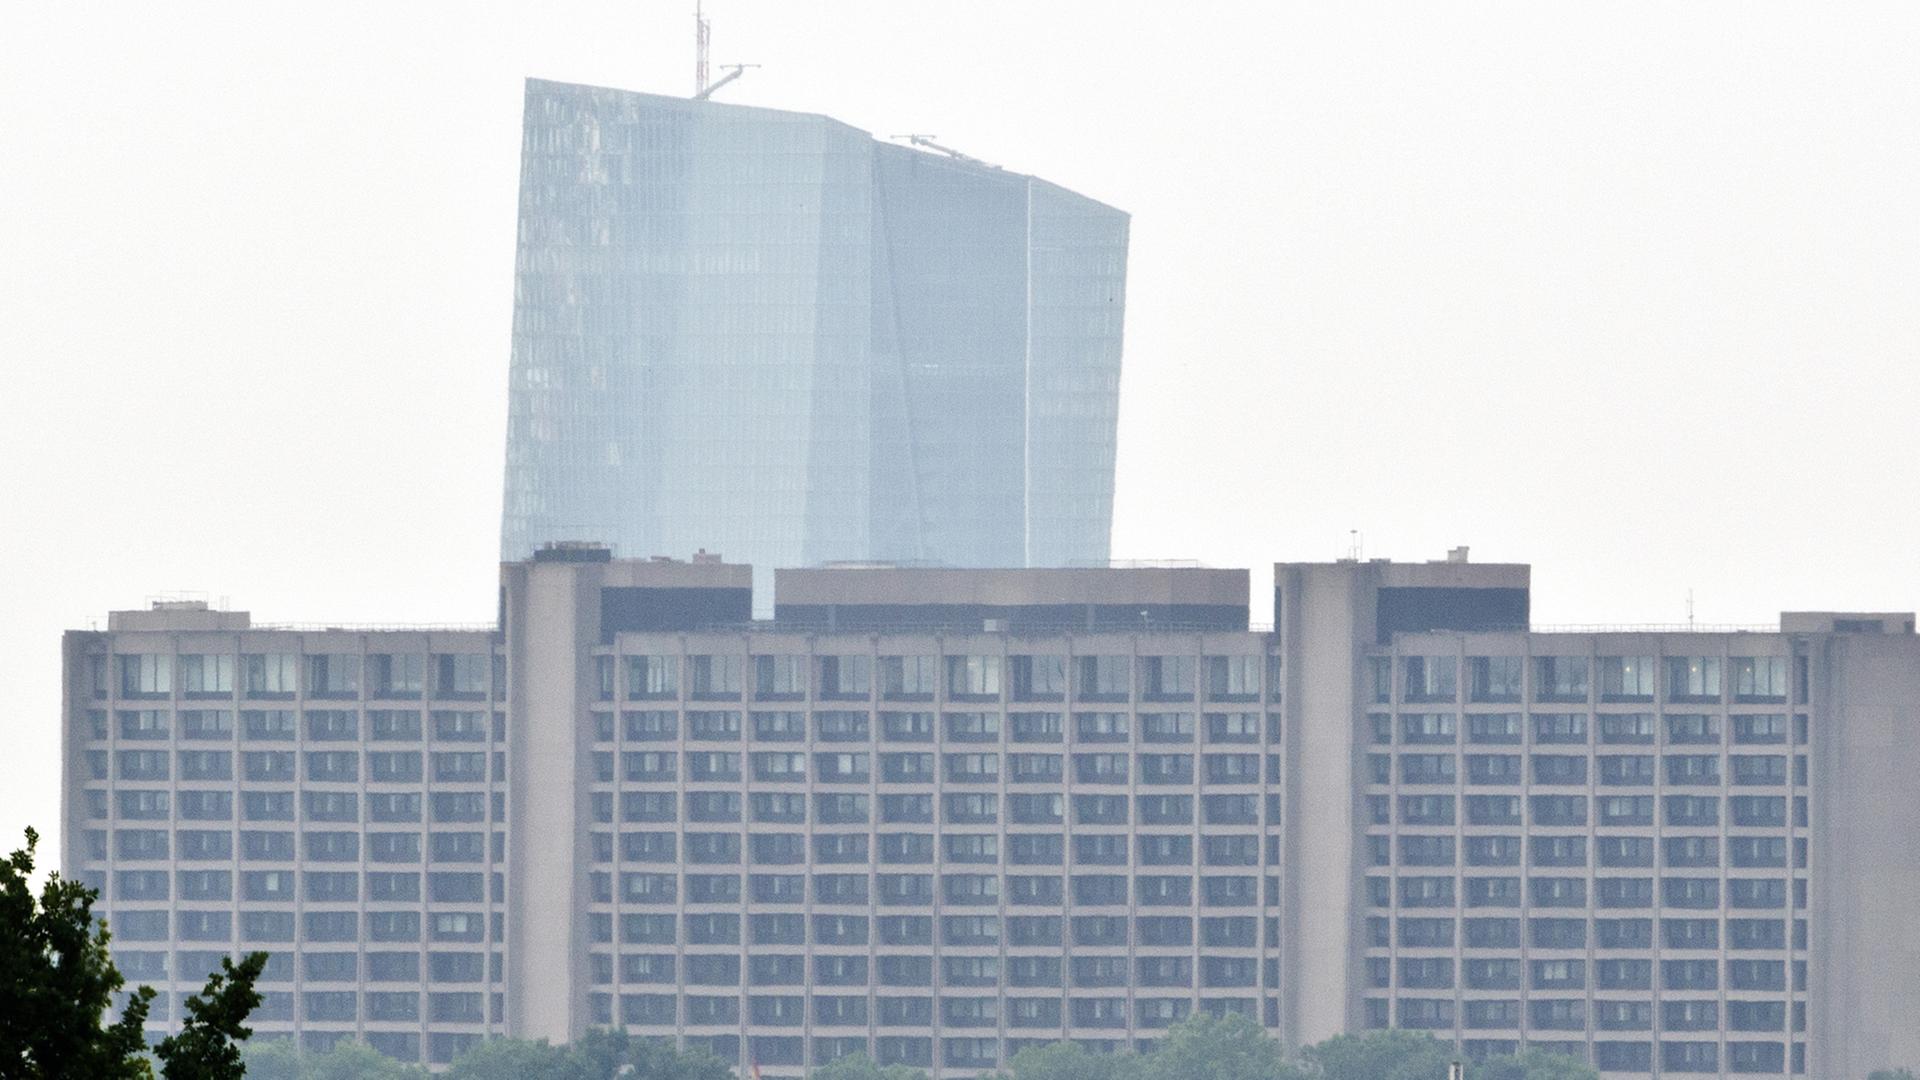 Blick aus der Ferne auf das Gebäude der Bundesbank, hinter dem der Turm der Europäischen Zentralbank hervorragt. Der Himmel ist diesig-weiß.